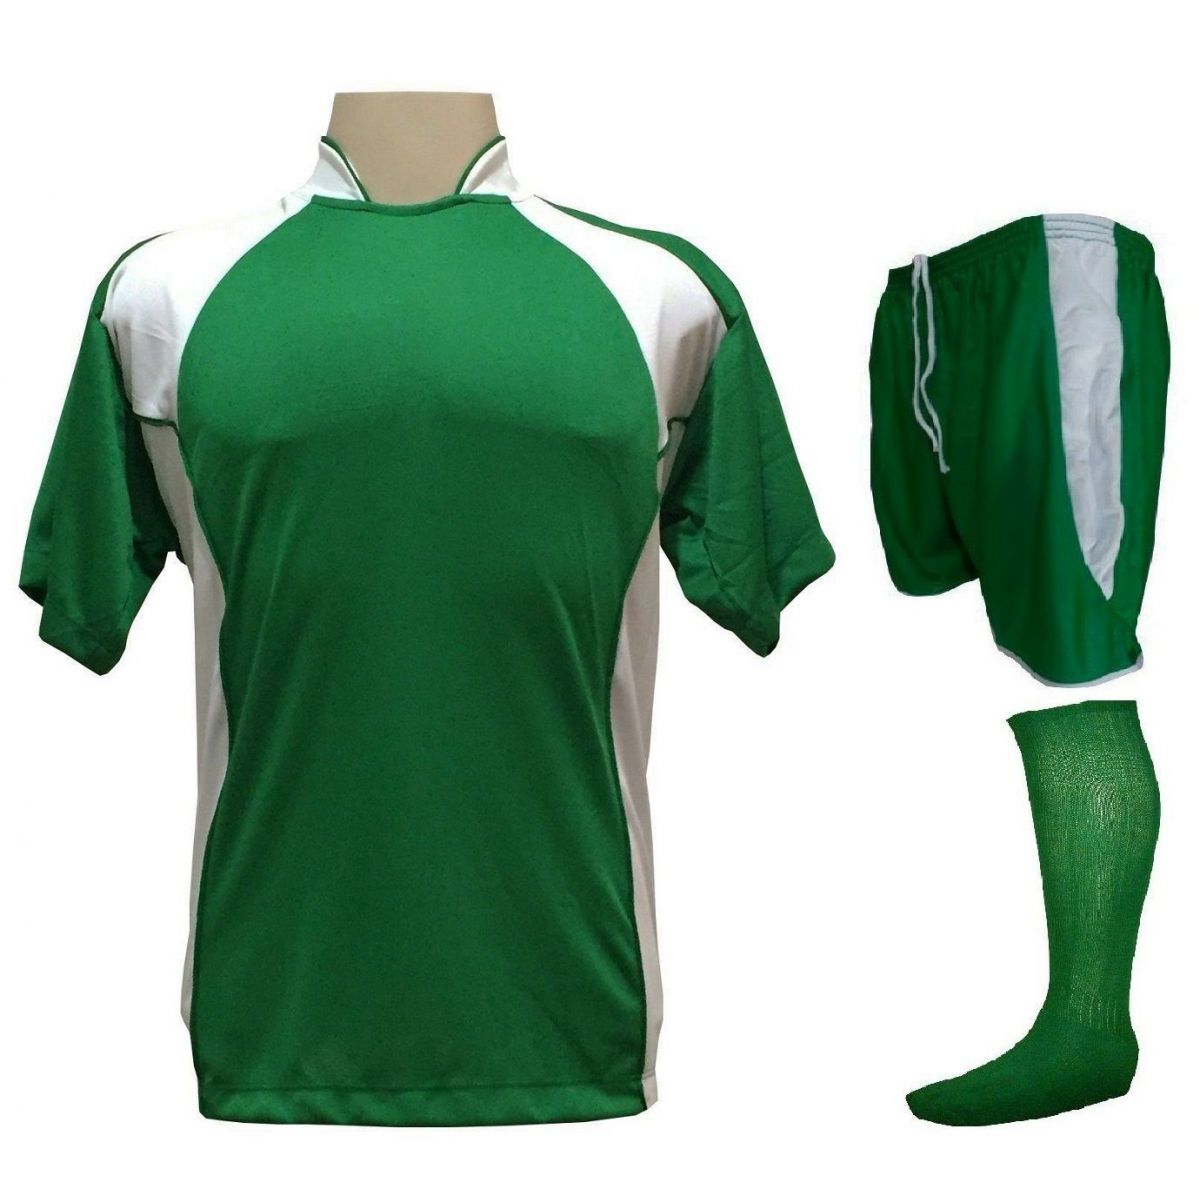 Uniforme Esportivo Completo modelo Suécia 14+1 (14 Camisas Verde/Branco + 14 Calções modelo Copa Verde/Branco + 14 Pares de Meiões Verdes + 1 Conjunto de Goleiro) + Brindes